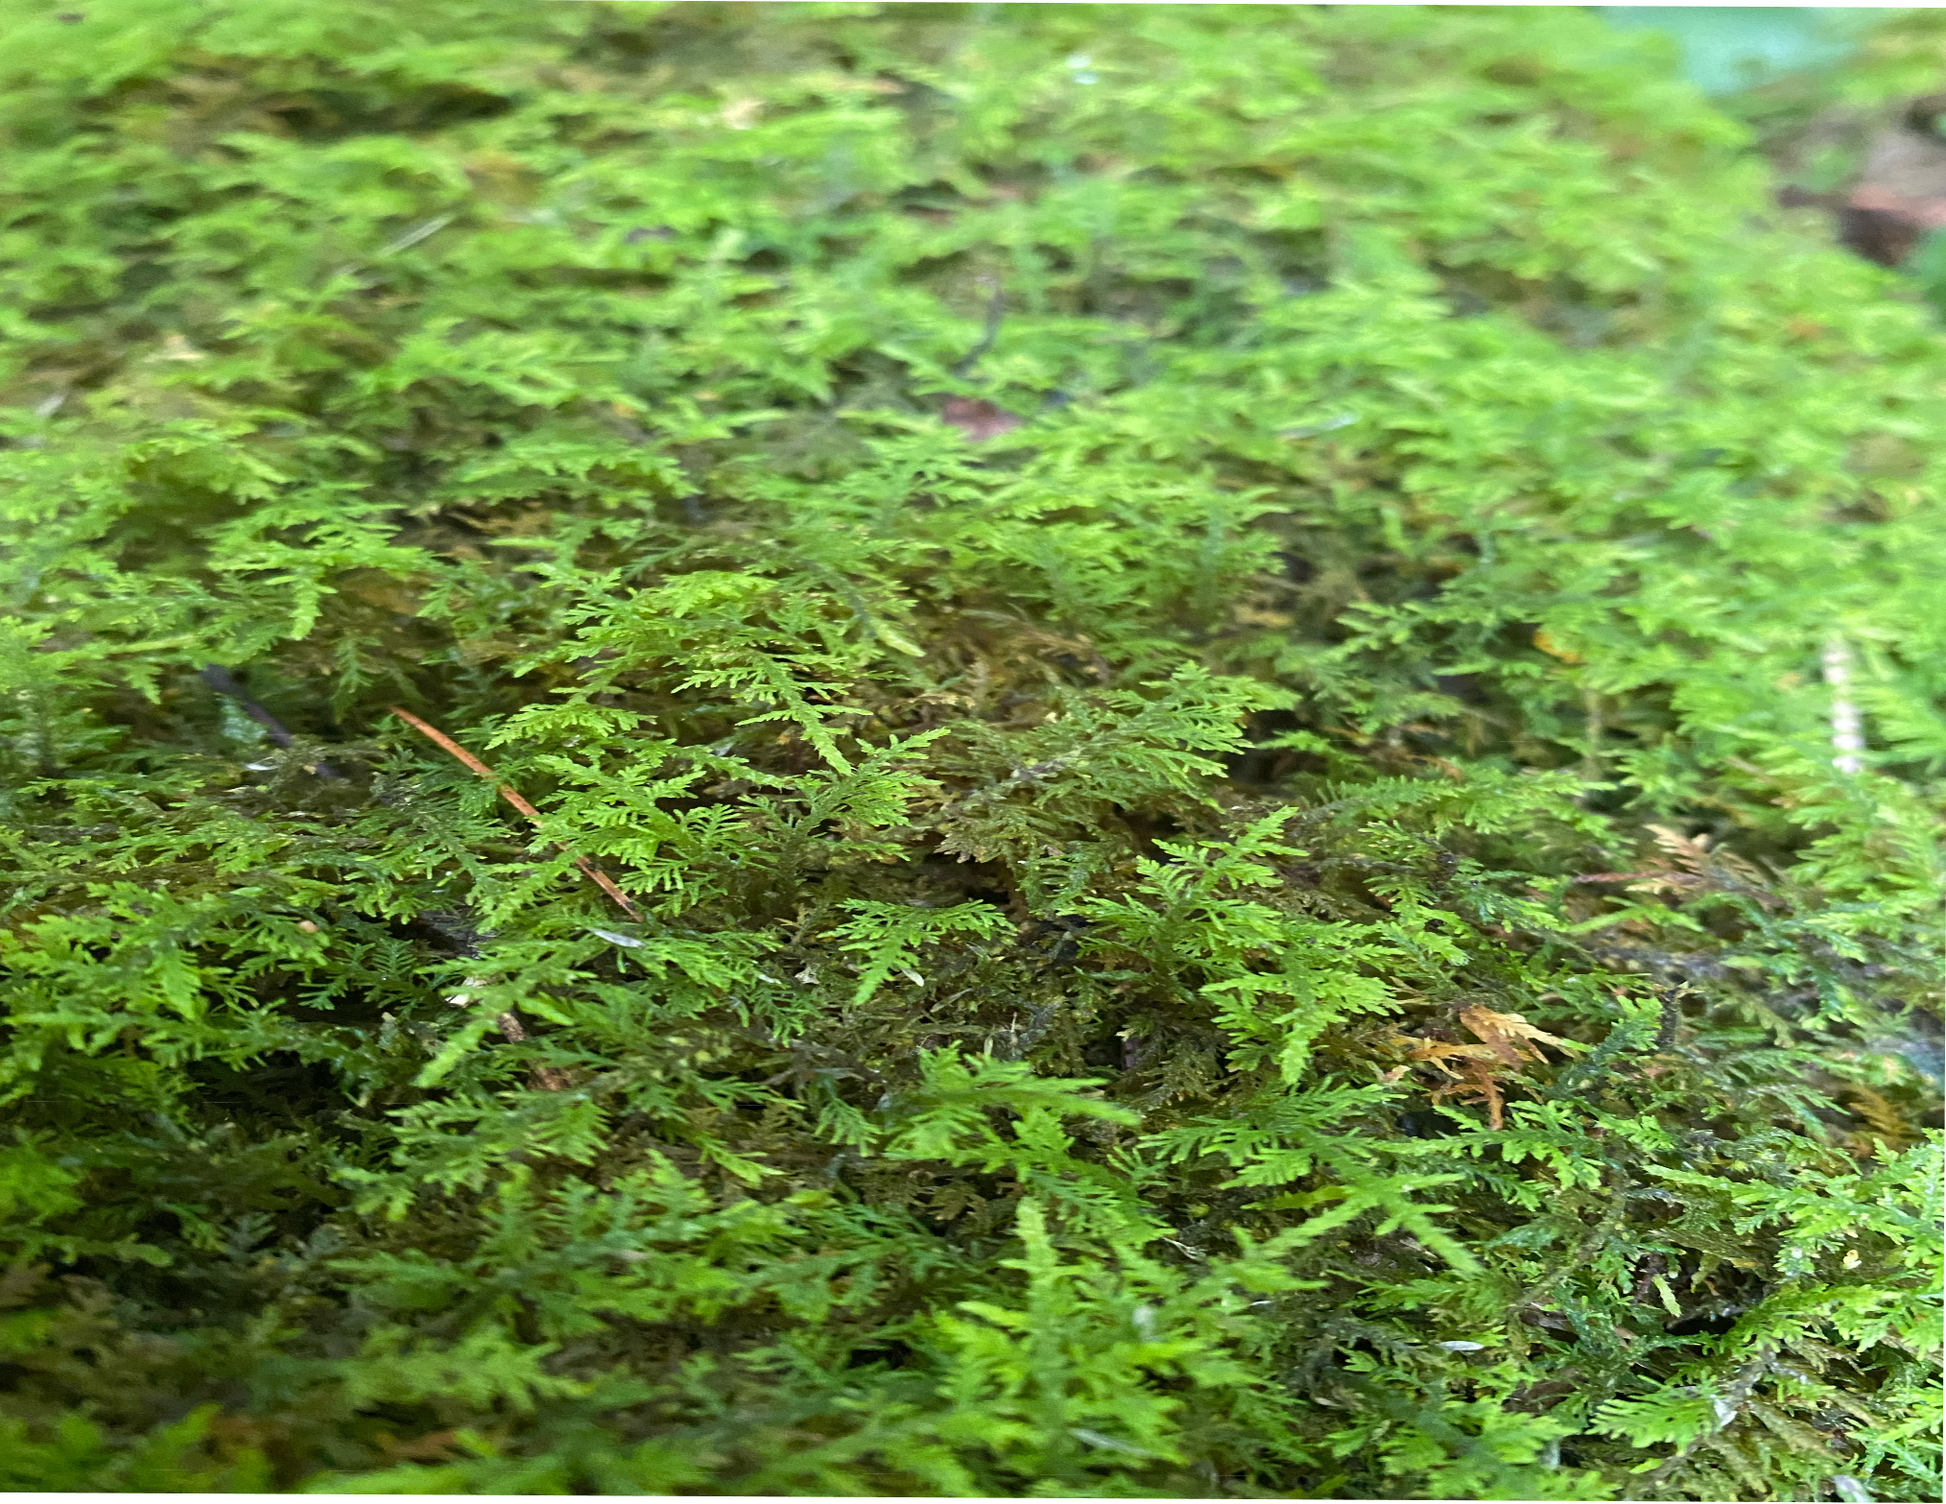 Reptile Moss Carpet Crawl Pets Fake Lawn Home Terrarium Cushion (Green), Size: 30X20X0.5CM